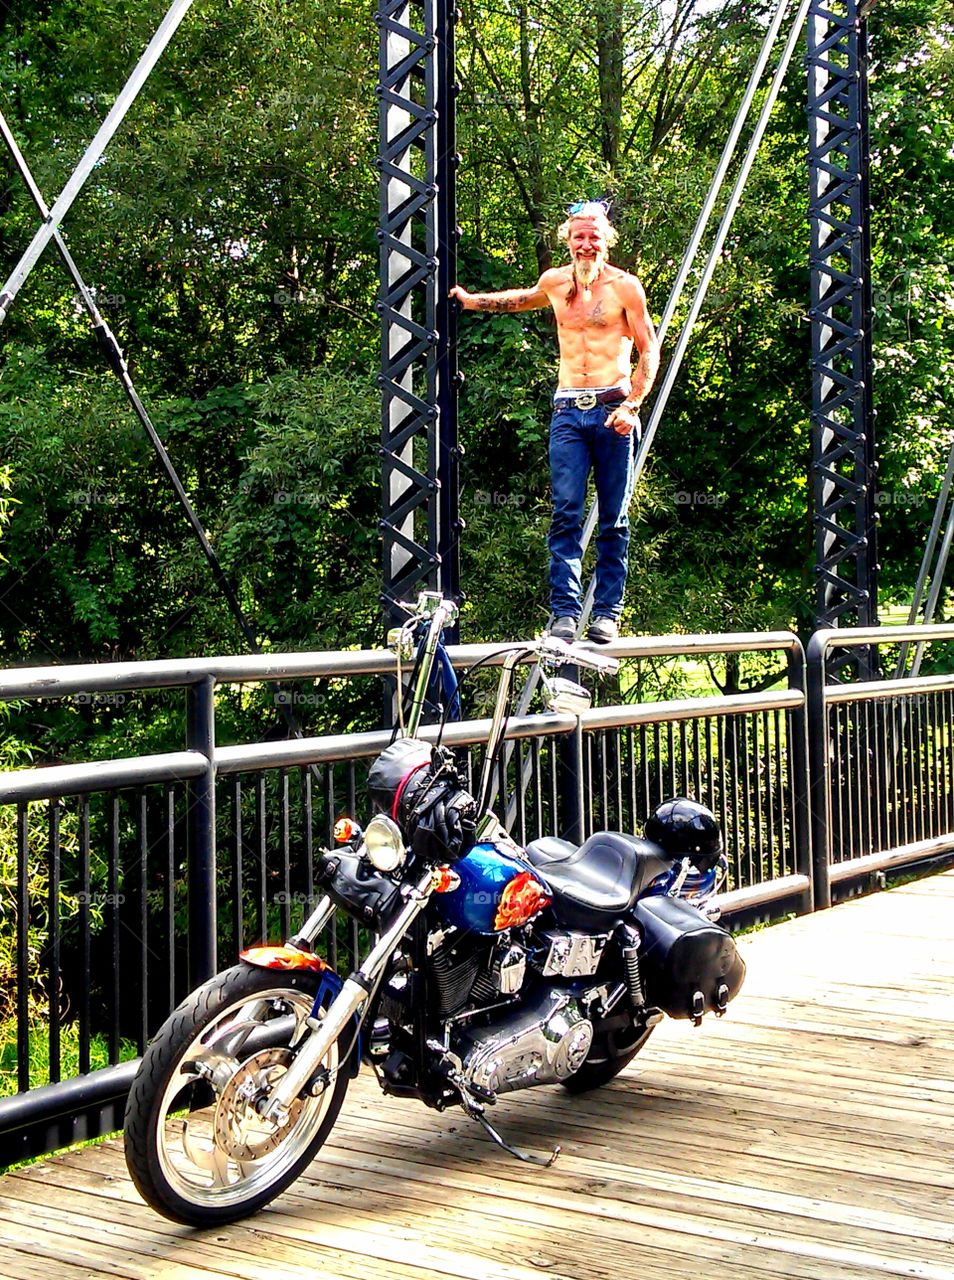 Shirtless man standing on railing near motorbike